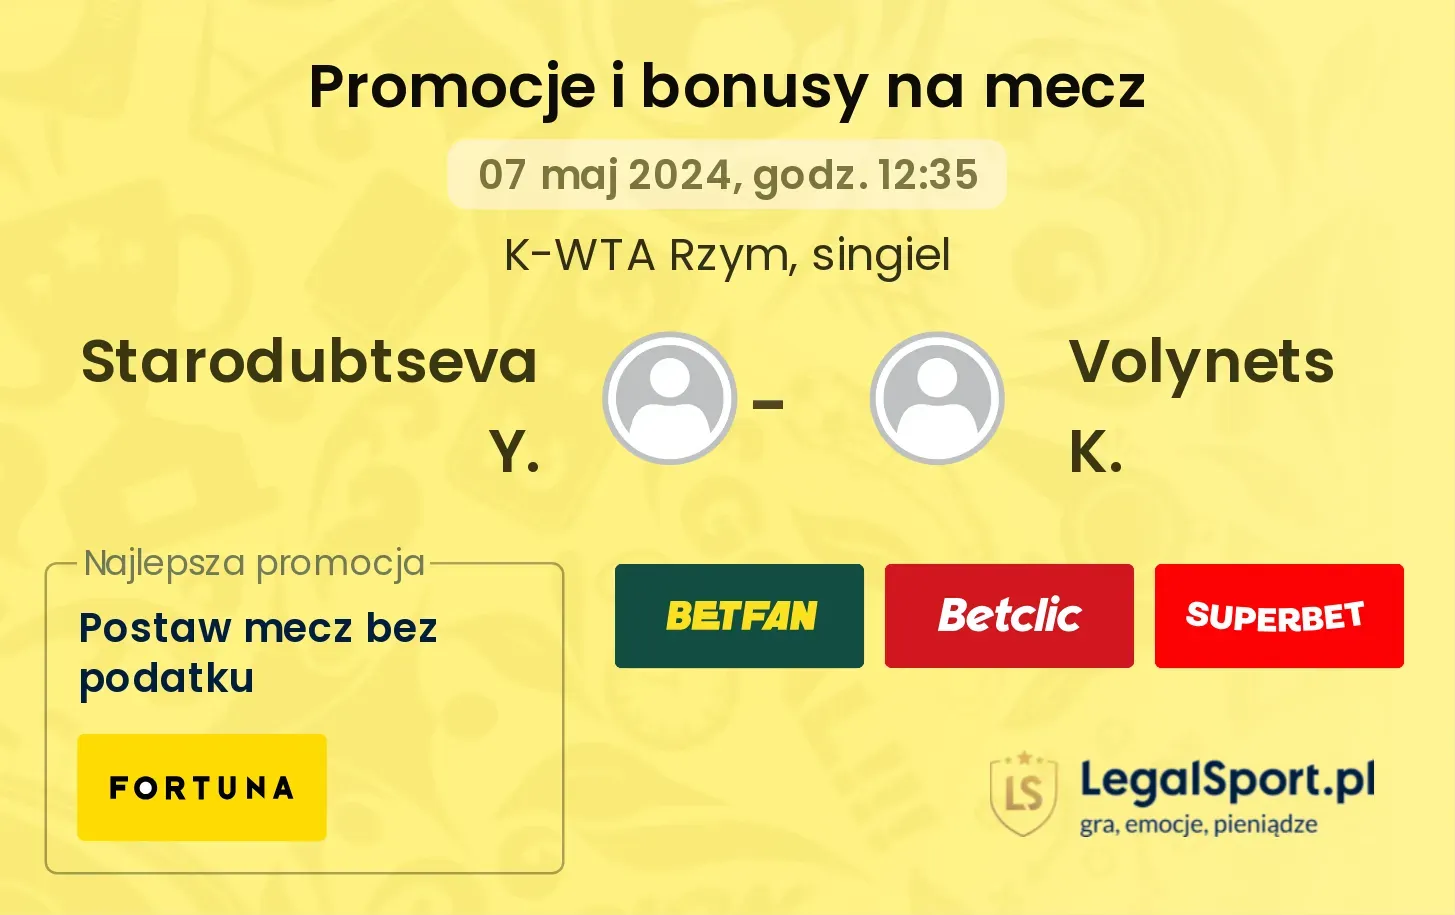 Starodubtseva Y. - Volynets K. promocje bonusy na mecz